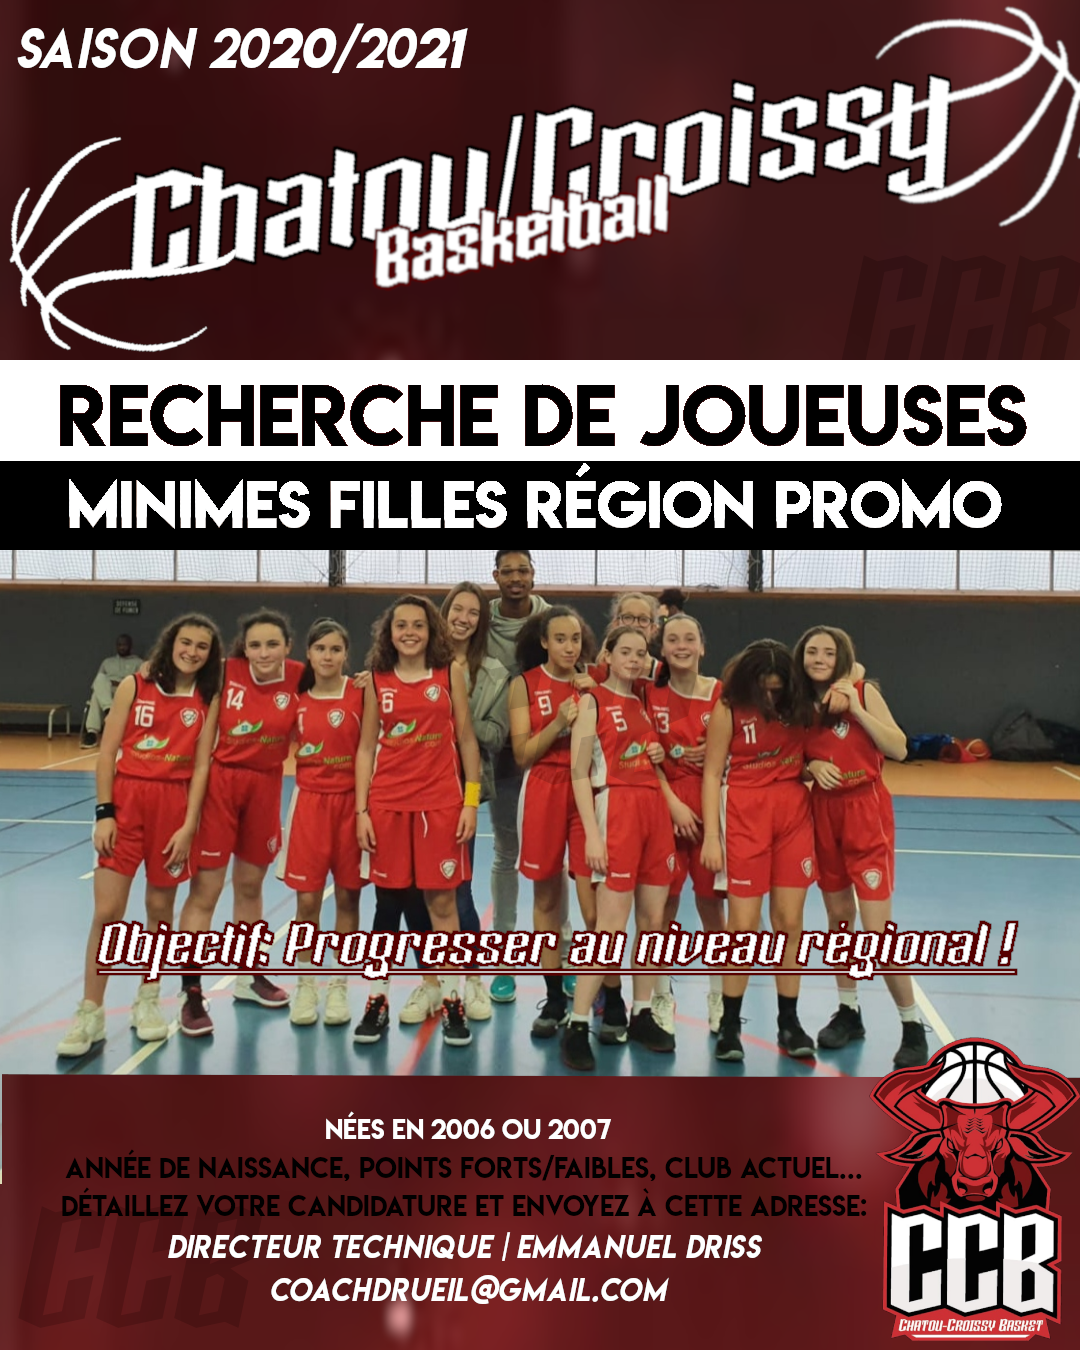 Recrutements Saison 20202021 Chatou Croissy Basket